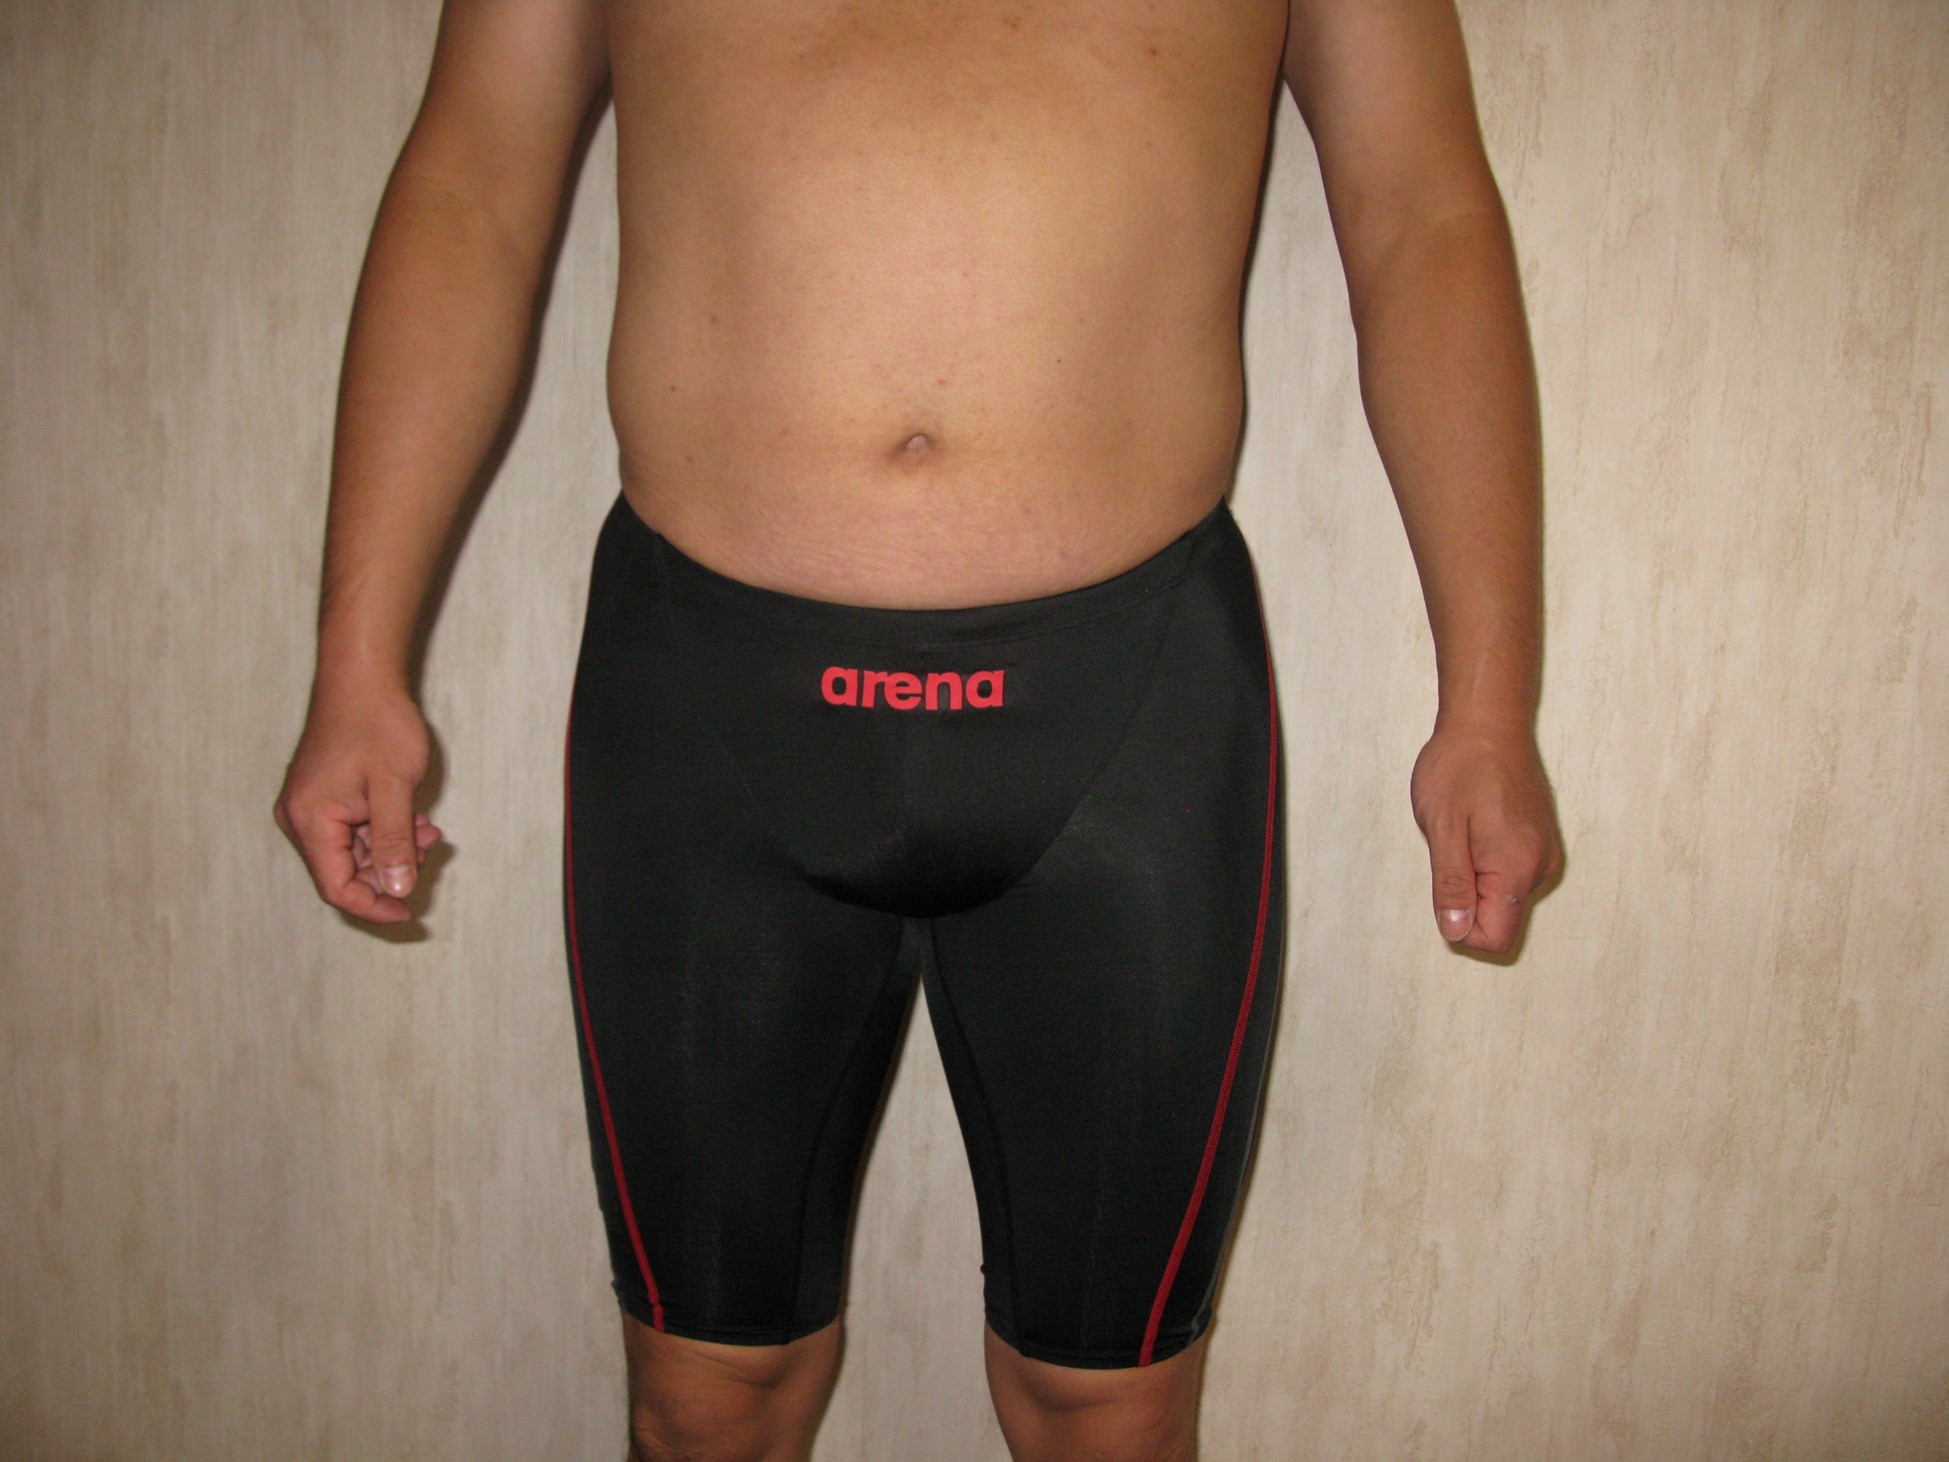 [男性] スパッツ型競泳水着画像掲示板へ投稿された8.2様のスパッツ型競泳水着画像 No.16357533090001